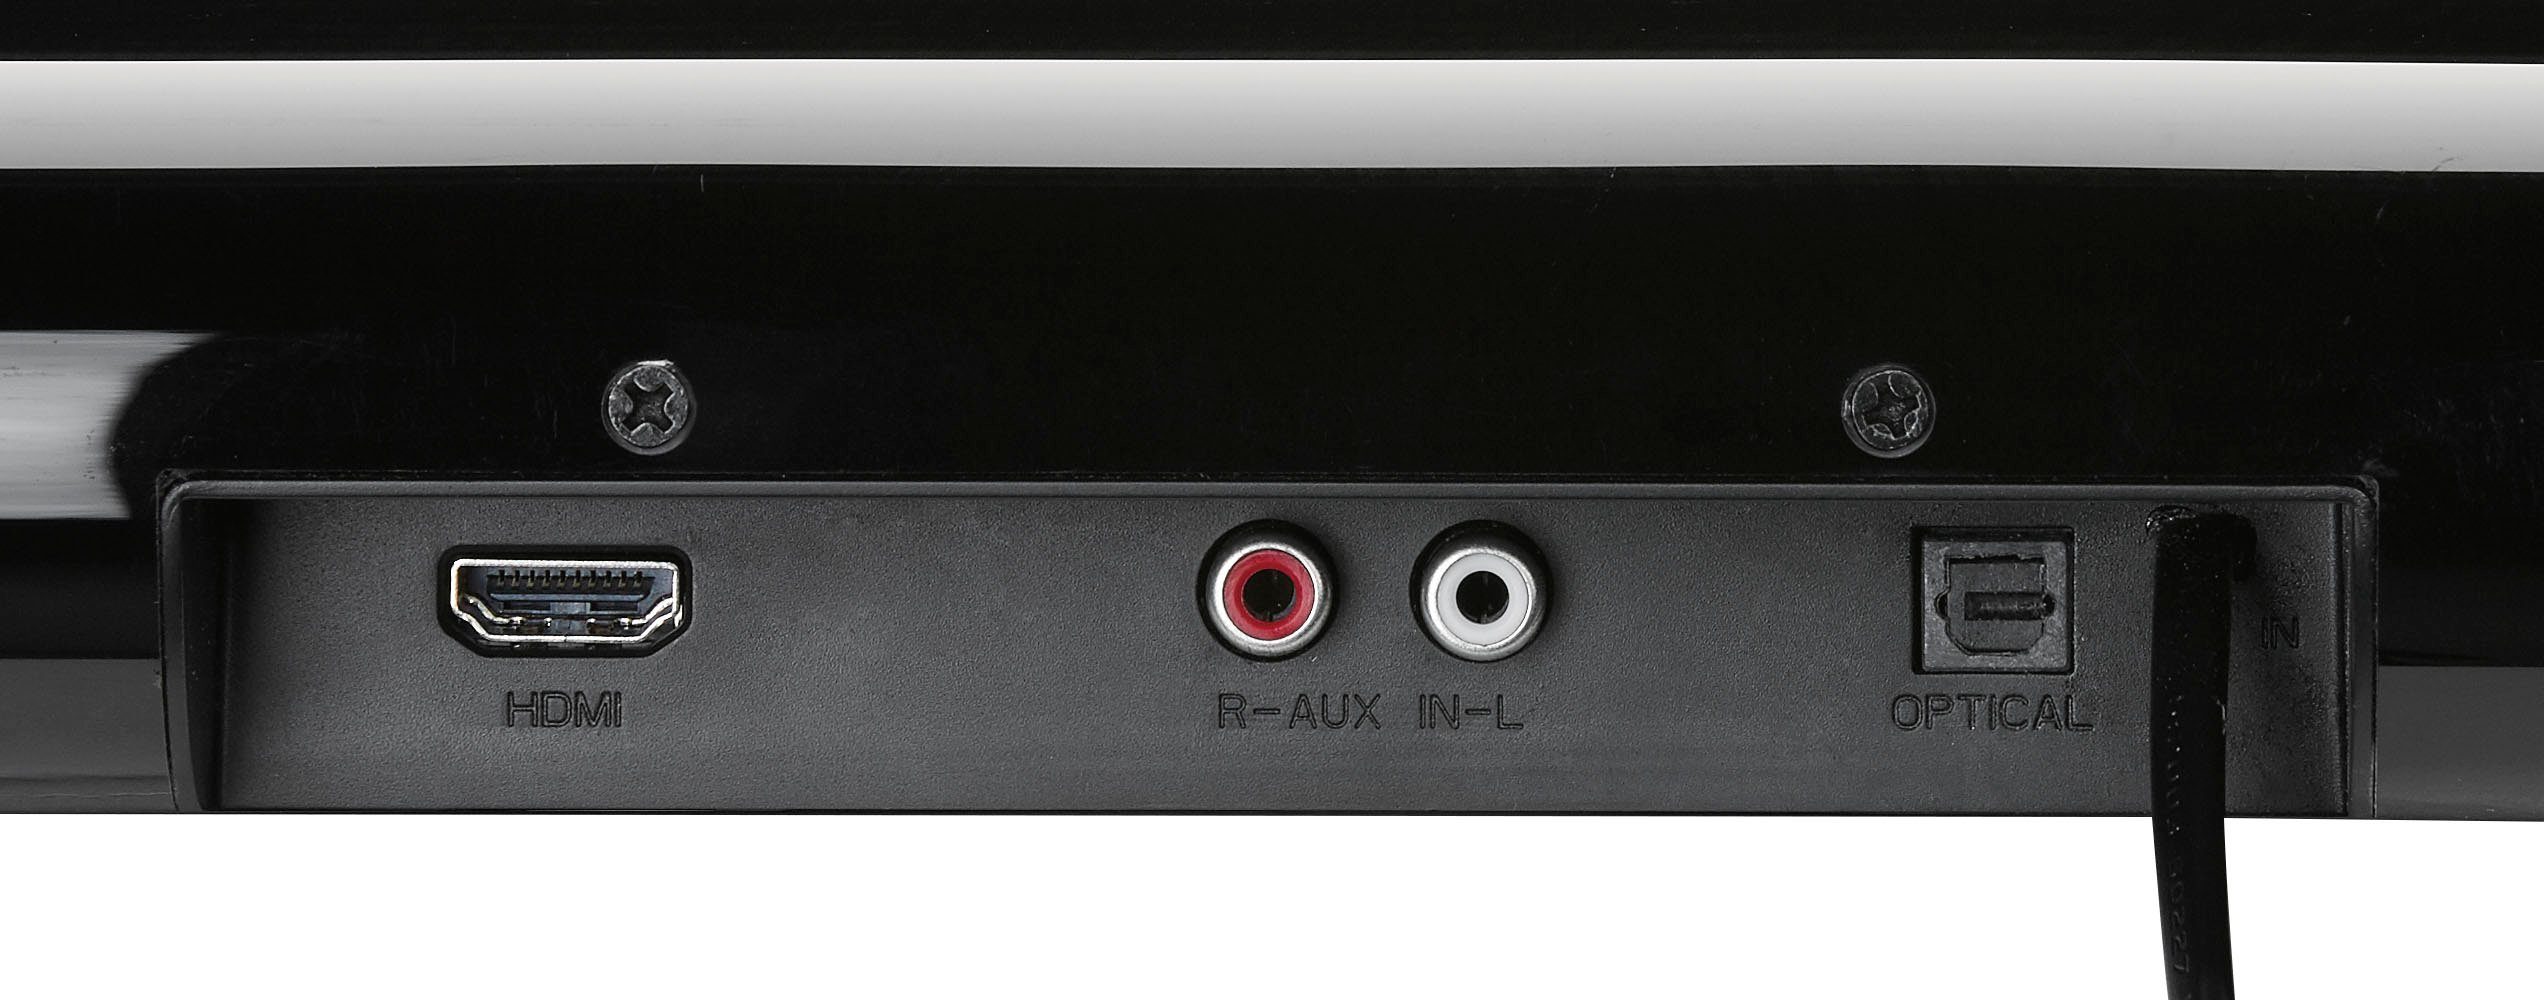 Grundig DSB 950 2.0 W) Soundbar 40 (Bluetooth, schwarz